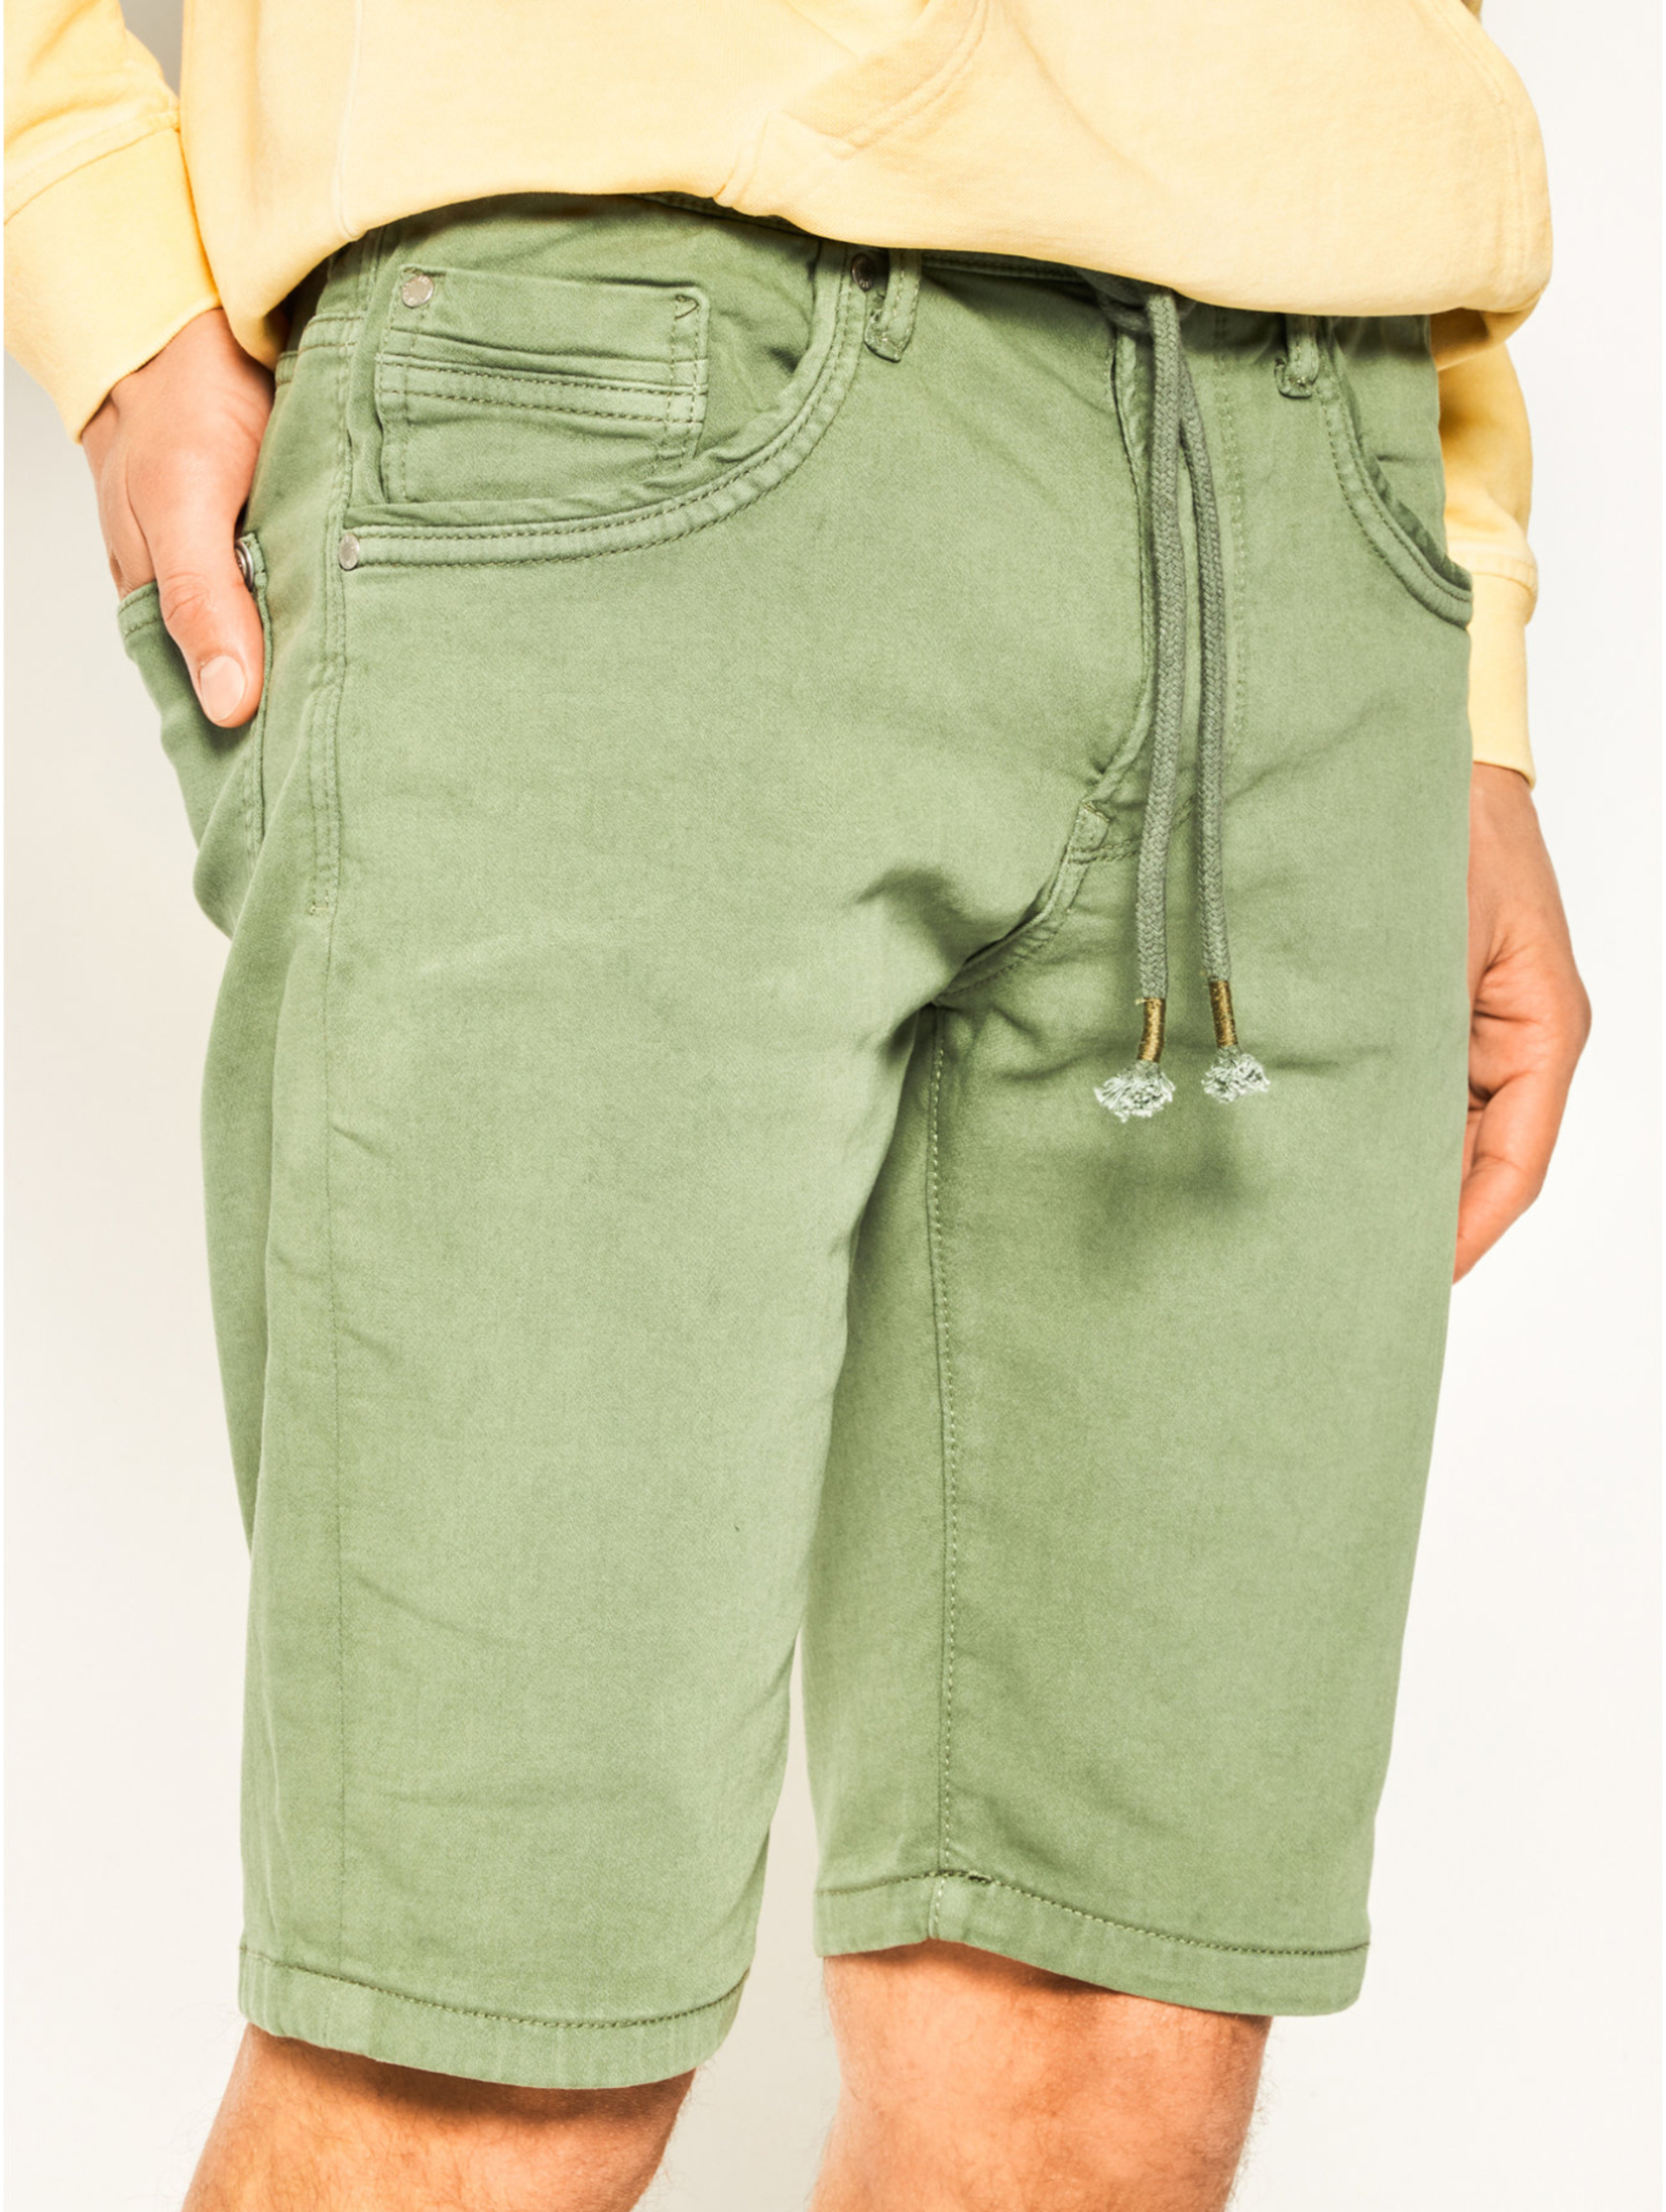 Pepe Jeans pánské zelené šortky Jagger - 30 (674)